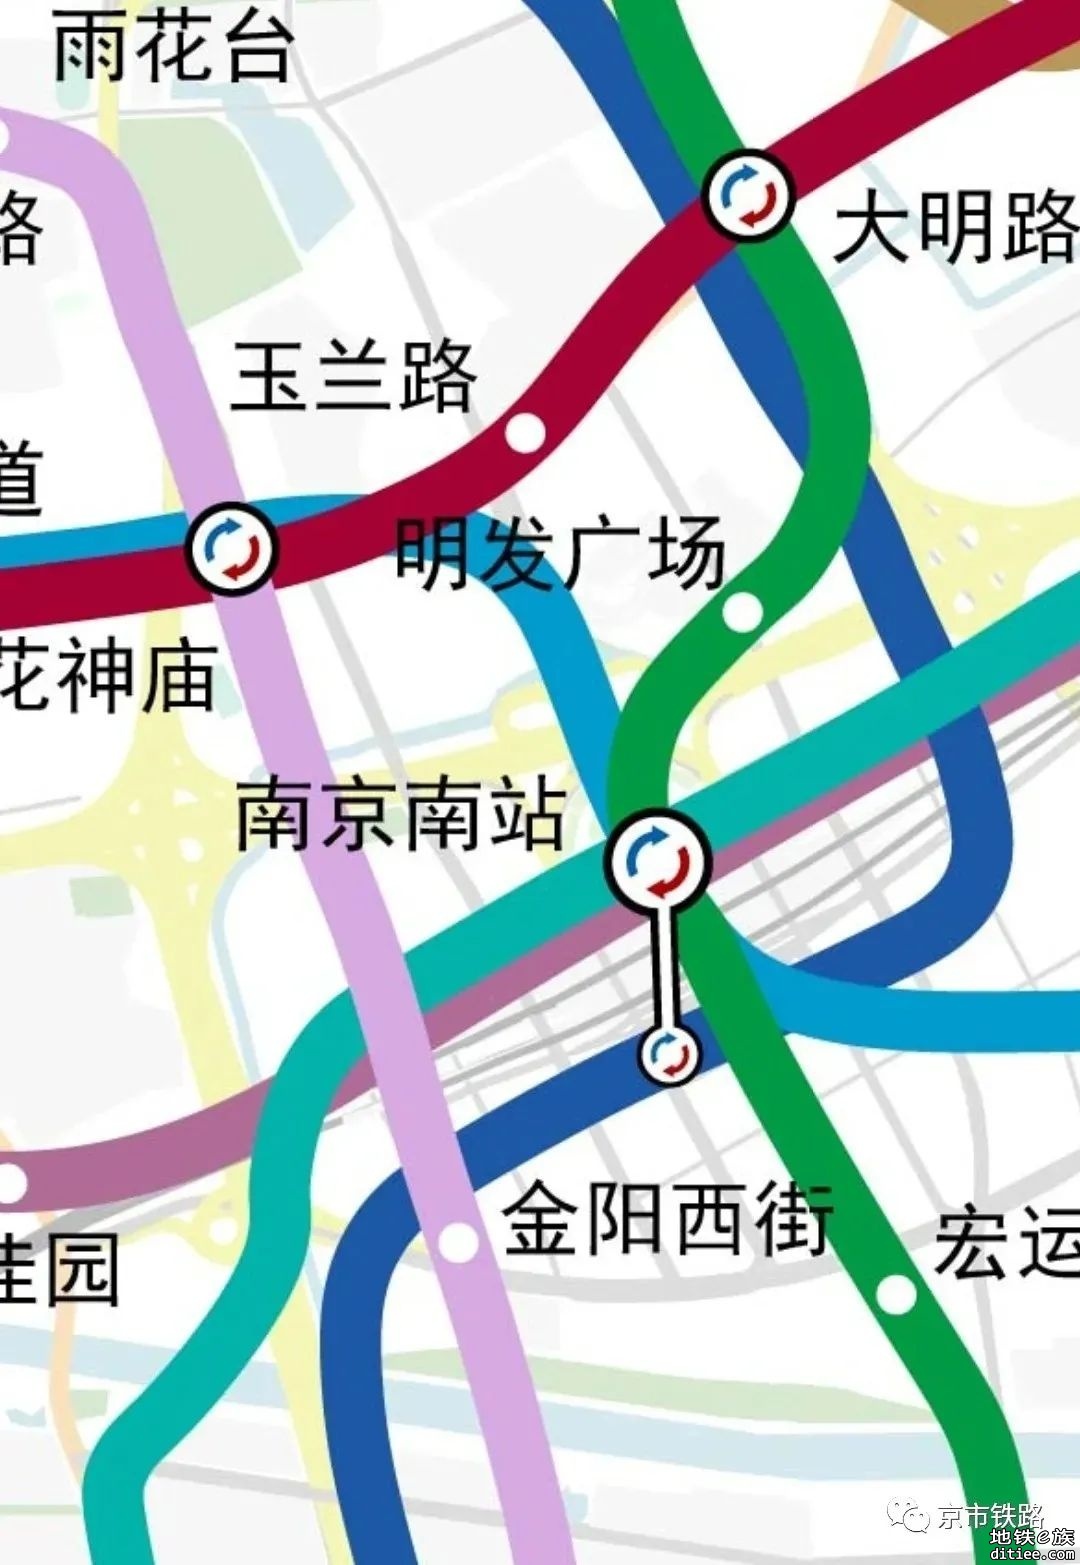 【京市铁路】南京地铁远景规划2.3.5